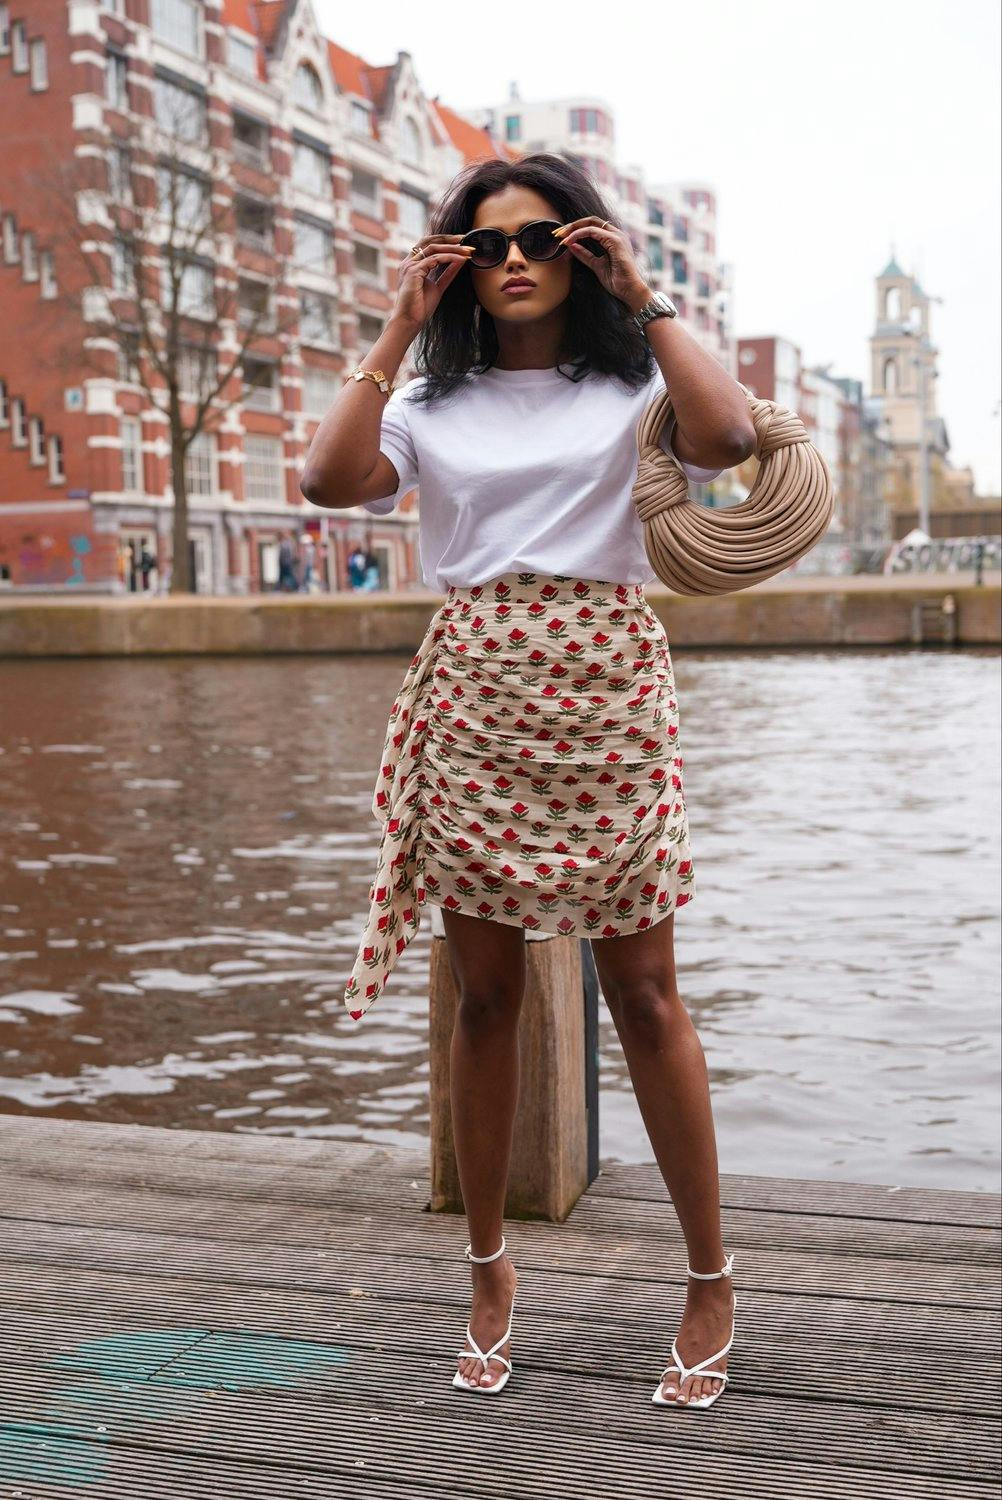 Sachini Dilanka wearing Rhode in Amsterdam